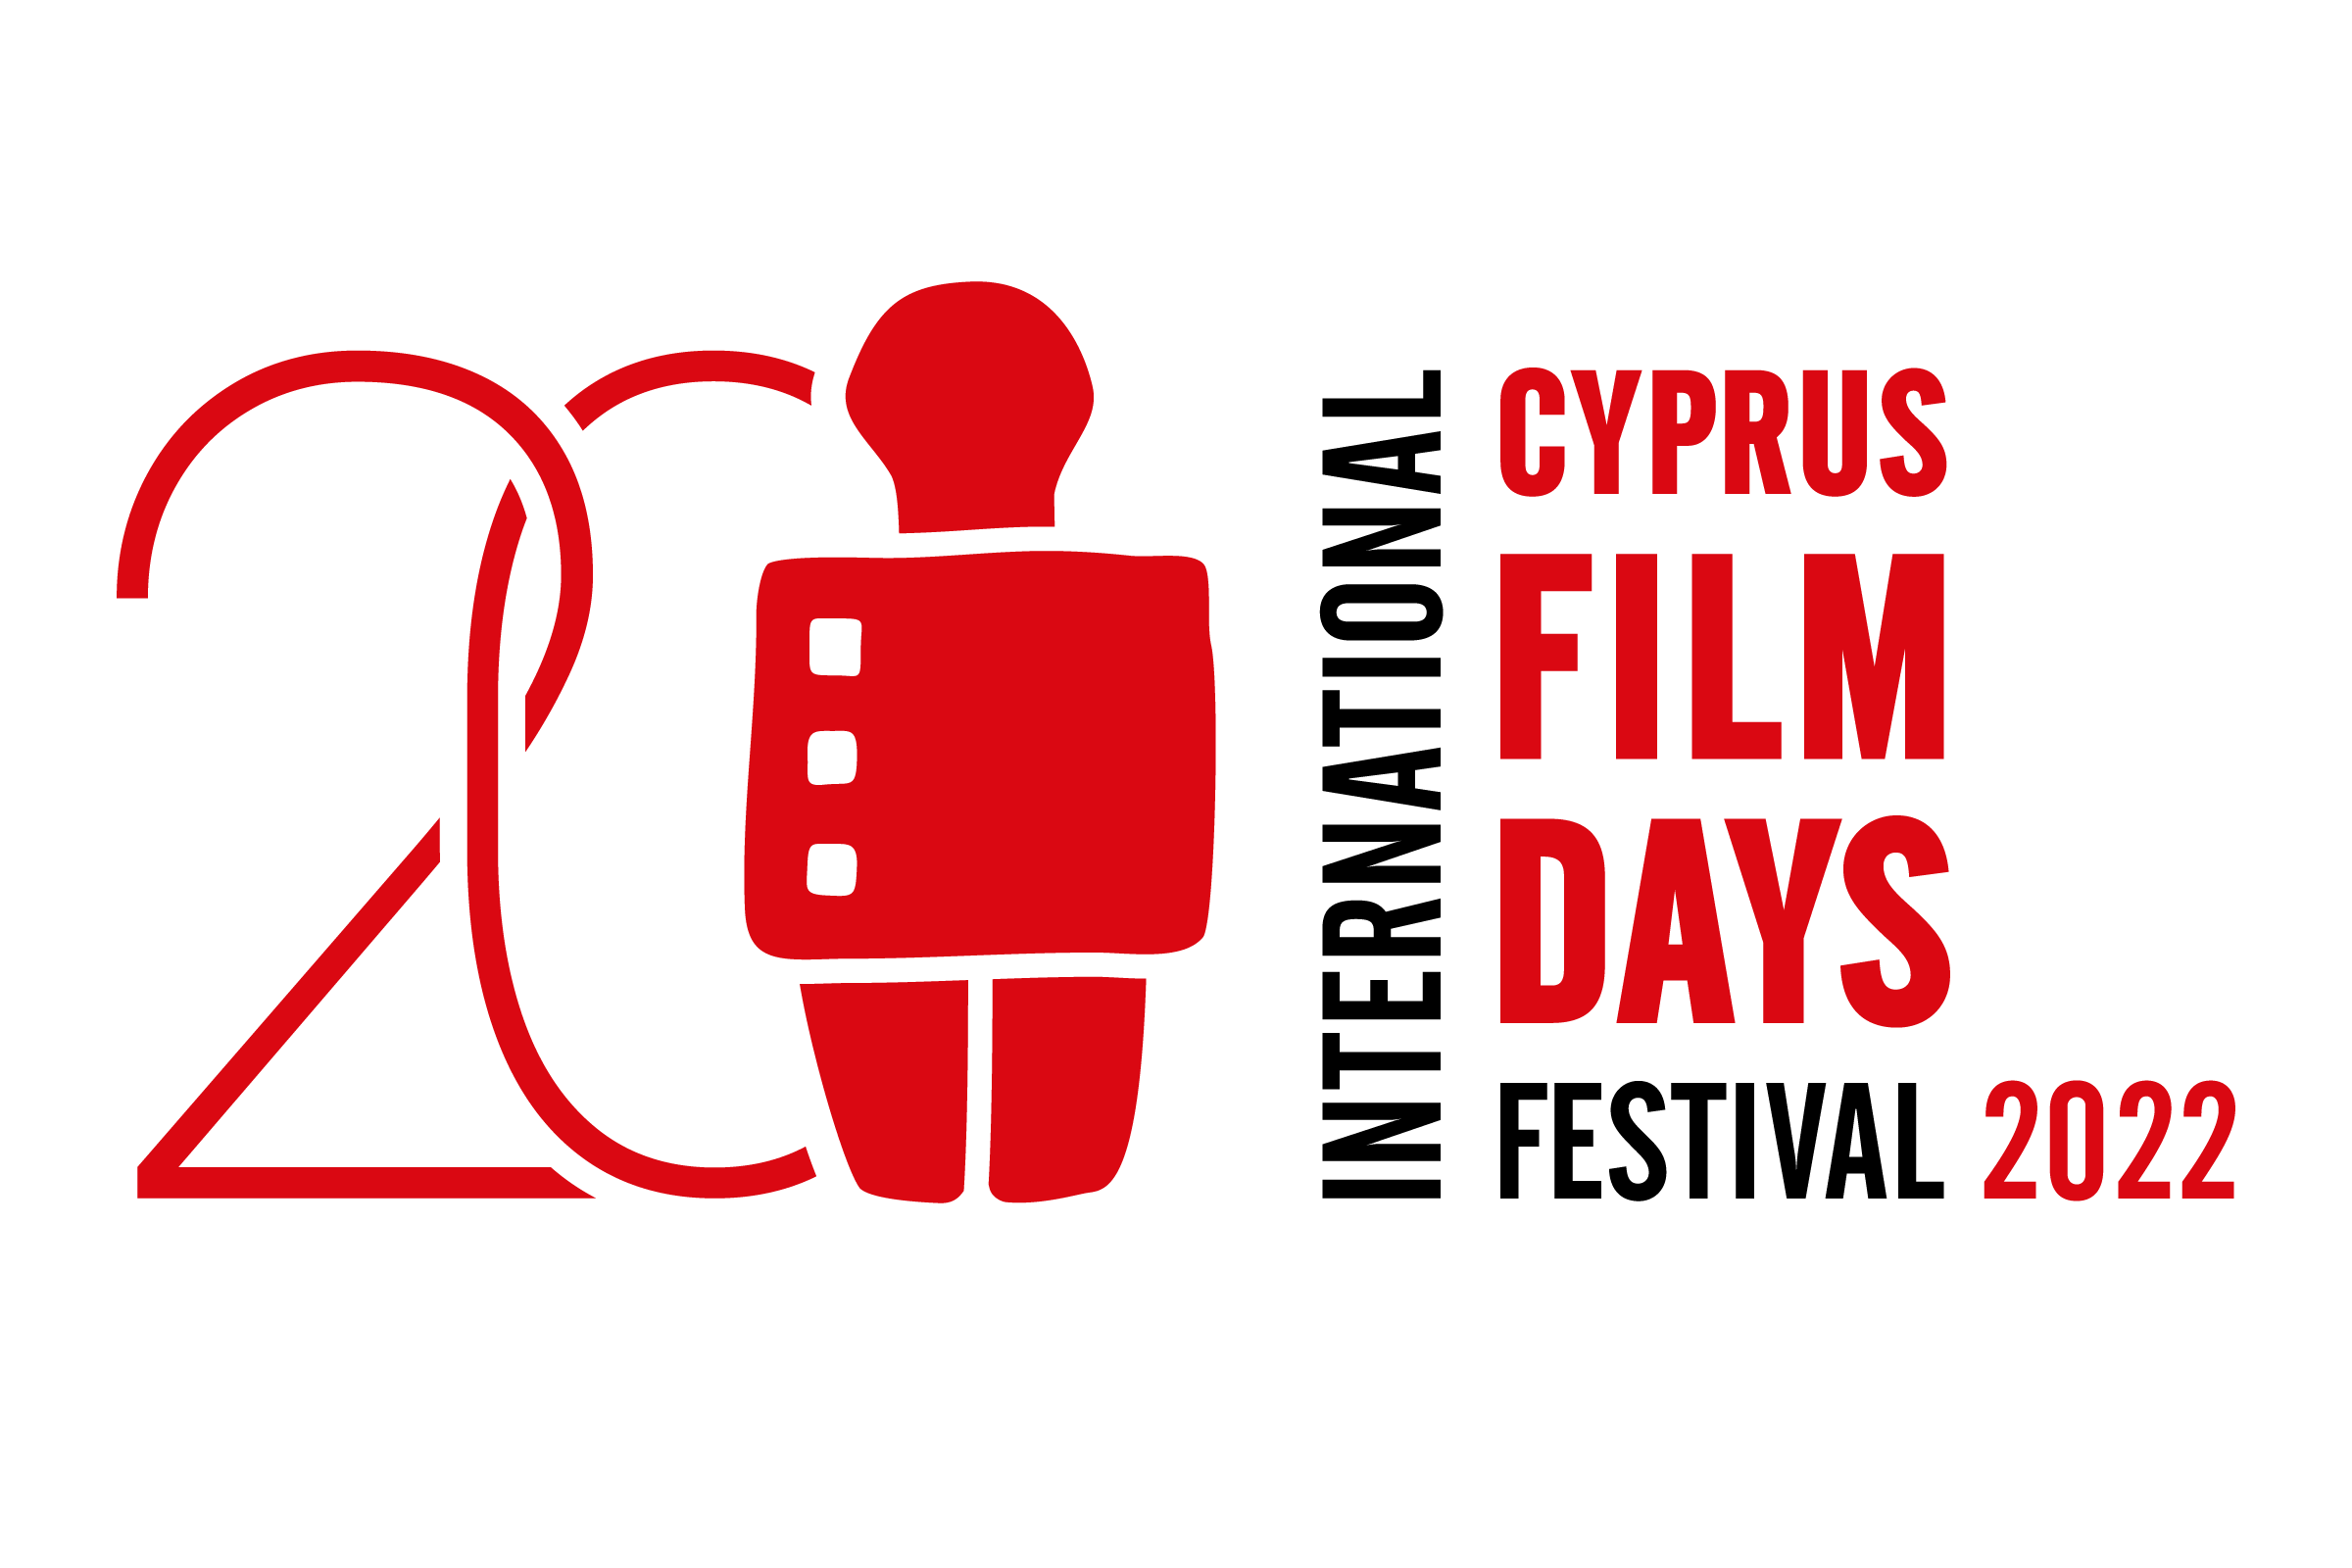 Cyprus Film Days International Festival 2022